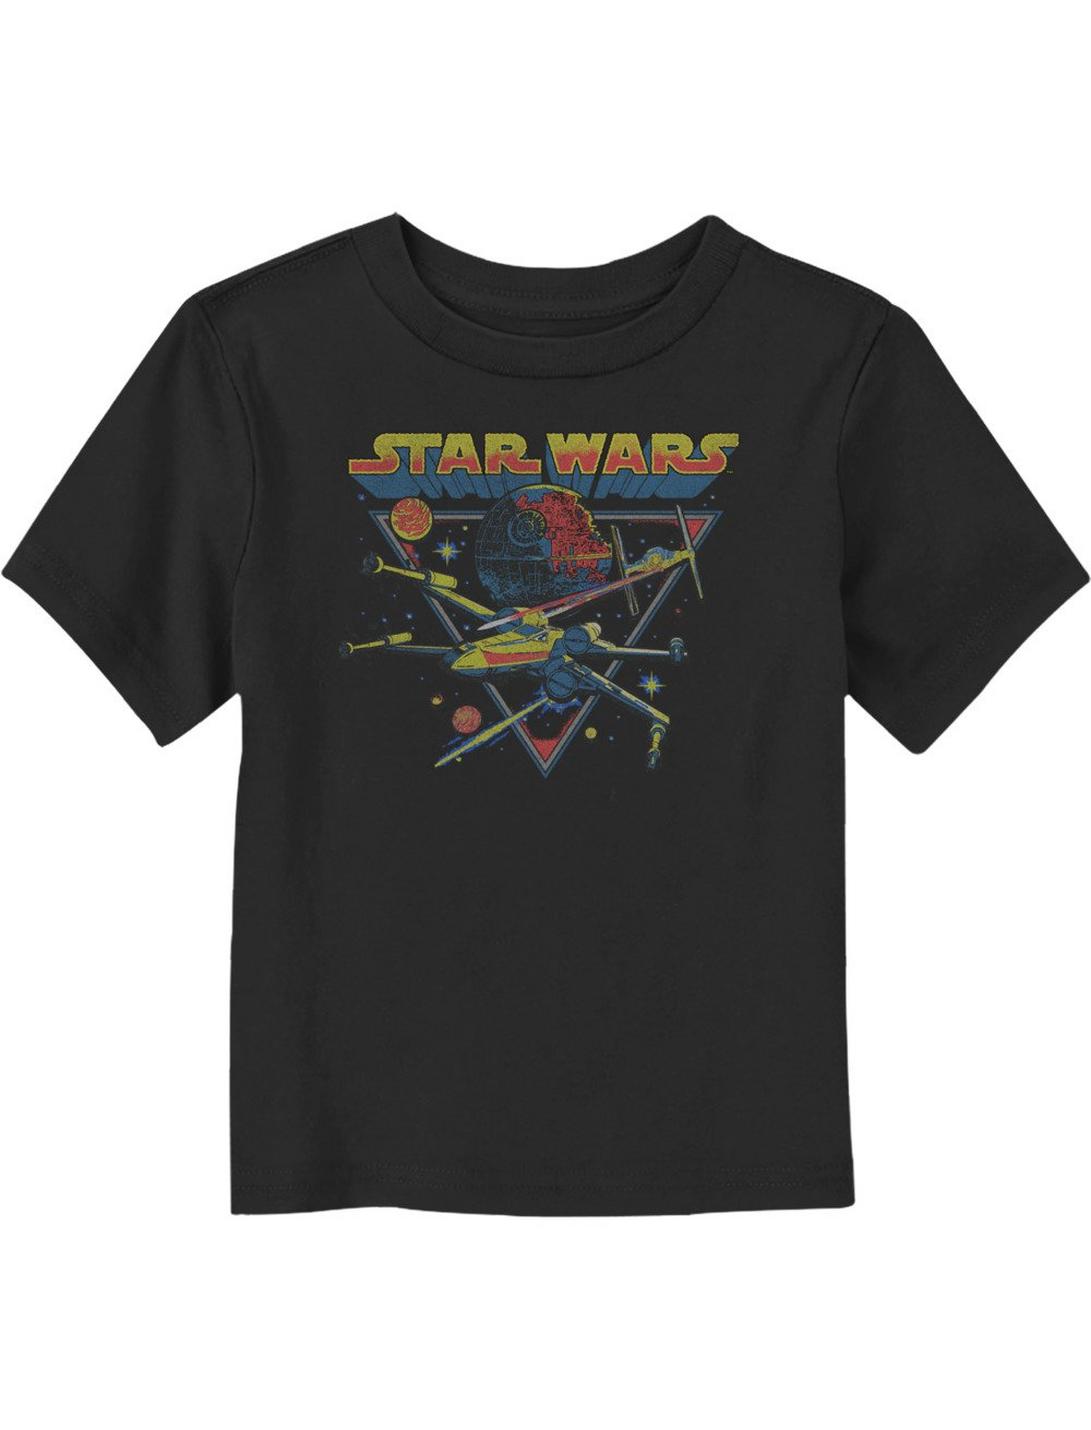 Star Wars Space Battle Toddler T-Shirt, BLACK, hi-res